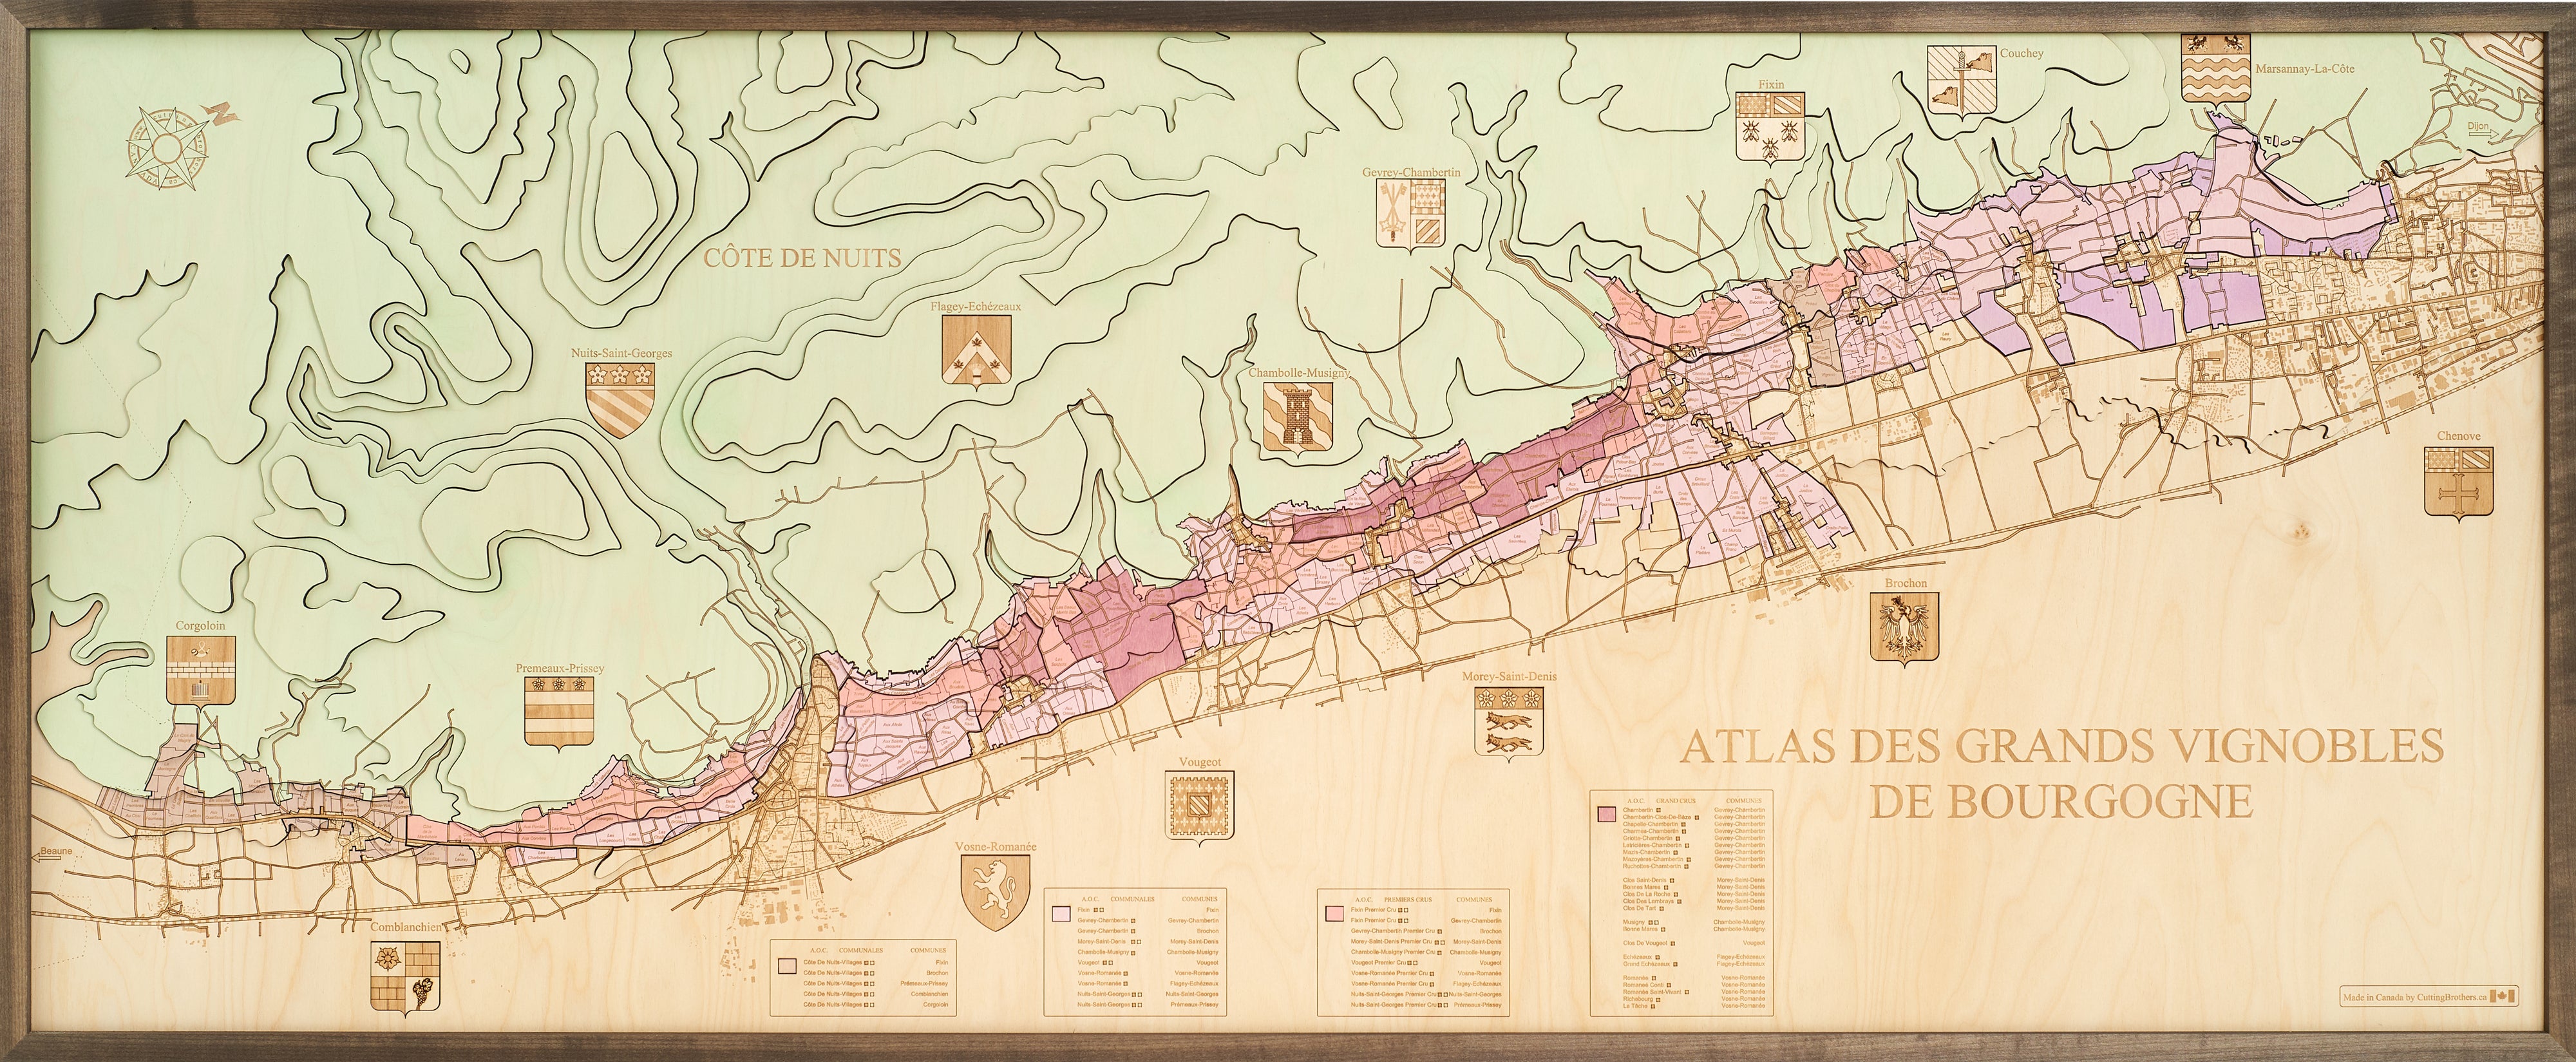 COTE DE NUITS-ATLAS DES GRANDS VINOBLES DE BOURGOGNE 3D wooden wall map - version XXL 